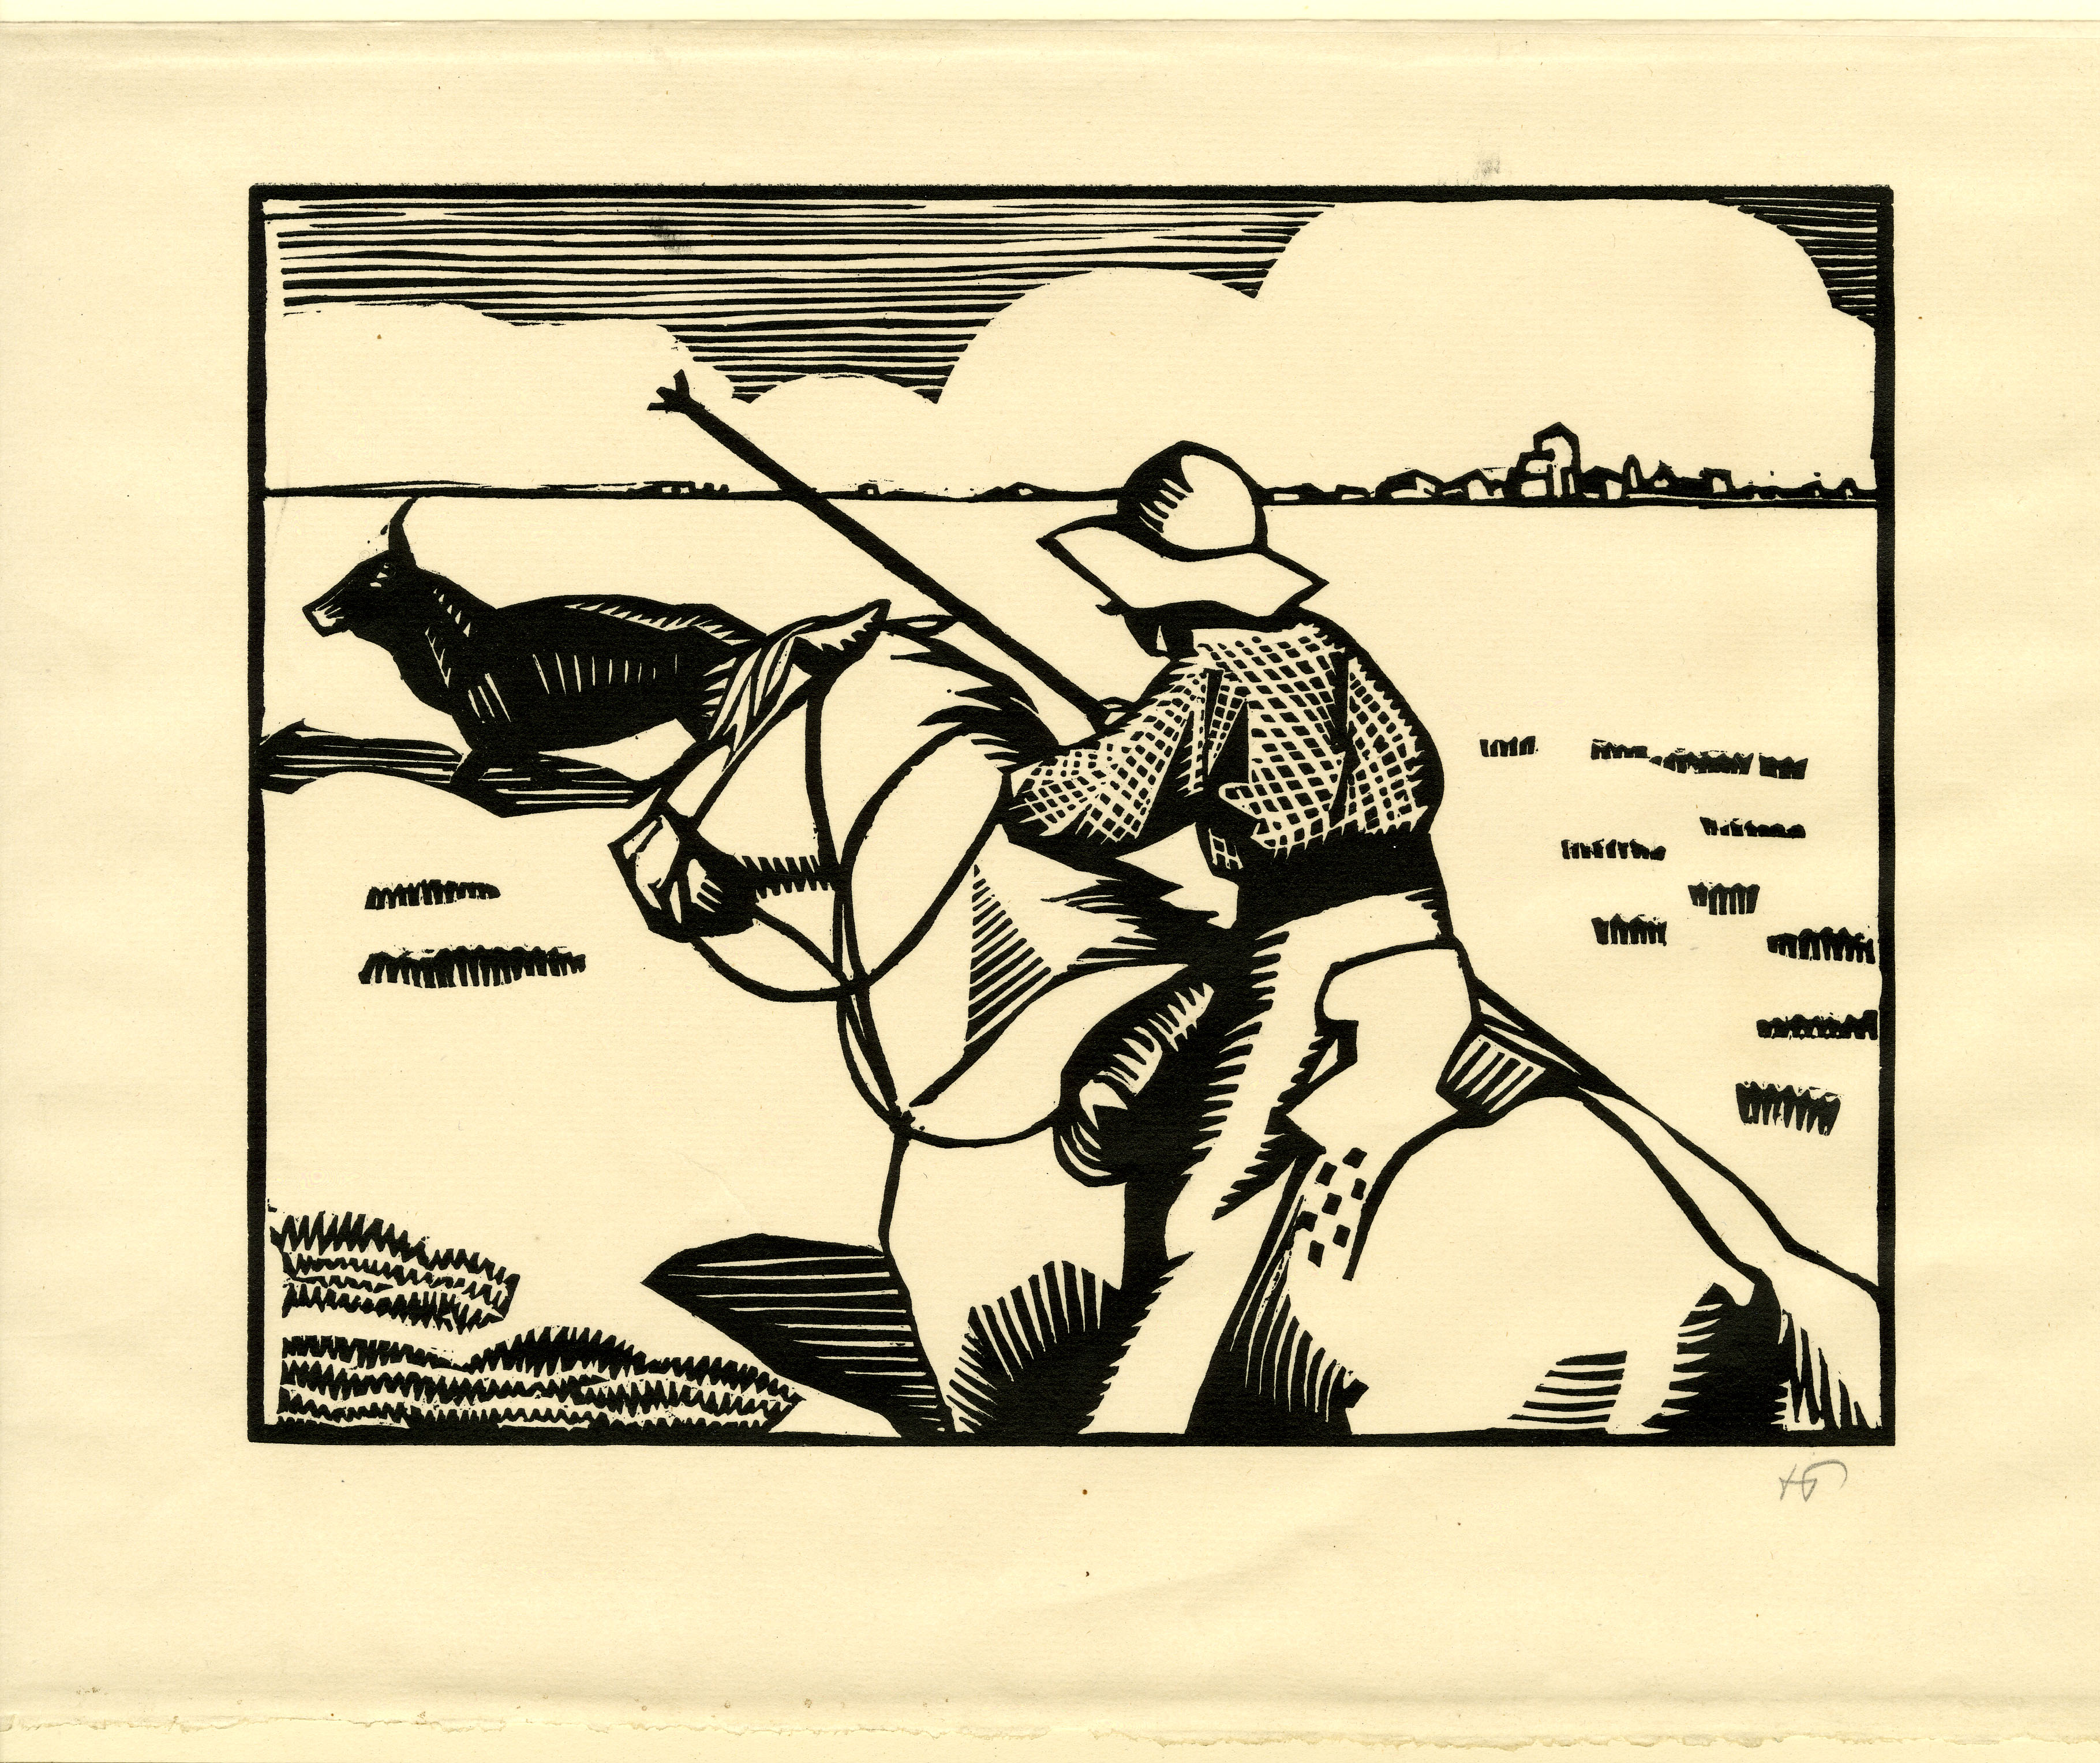 Figure on horseback wielding spear (1922)